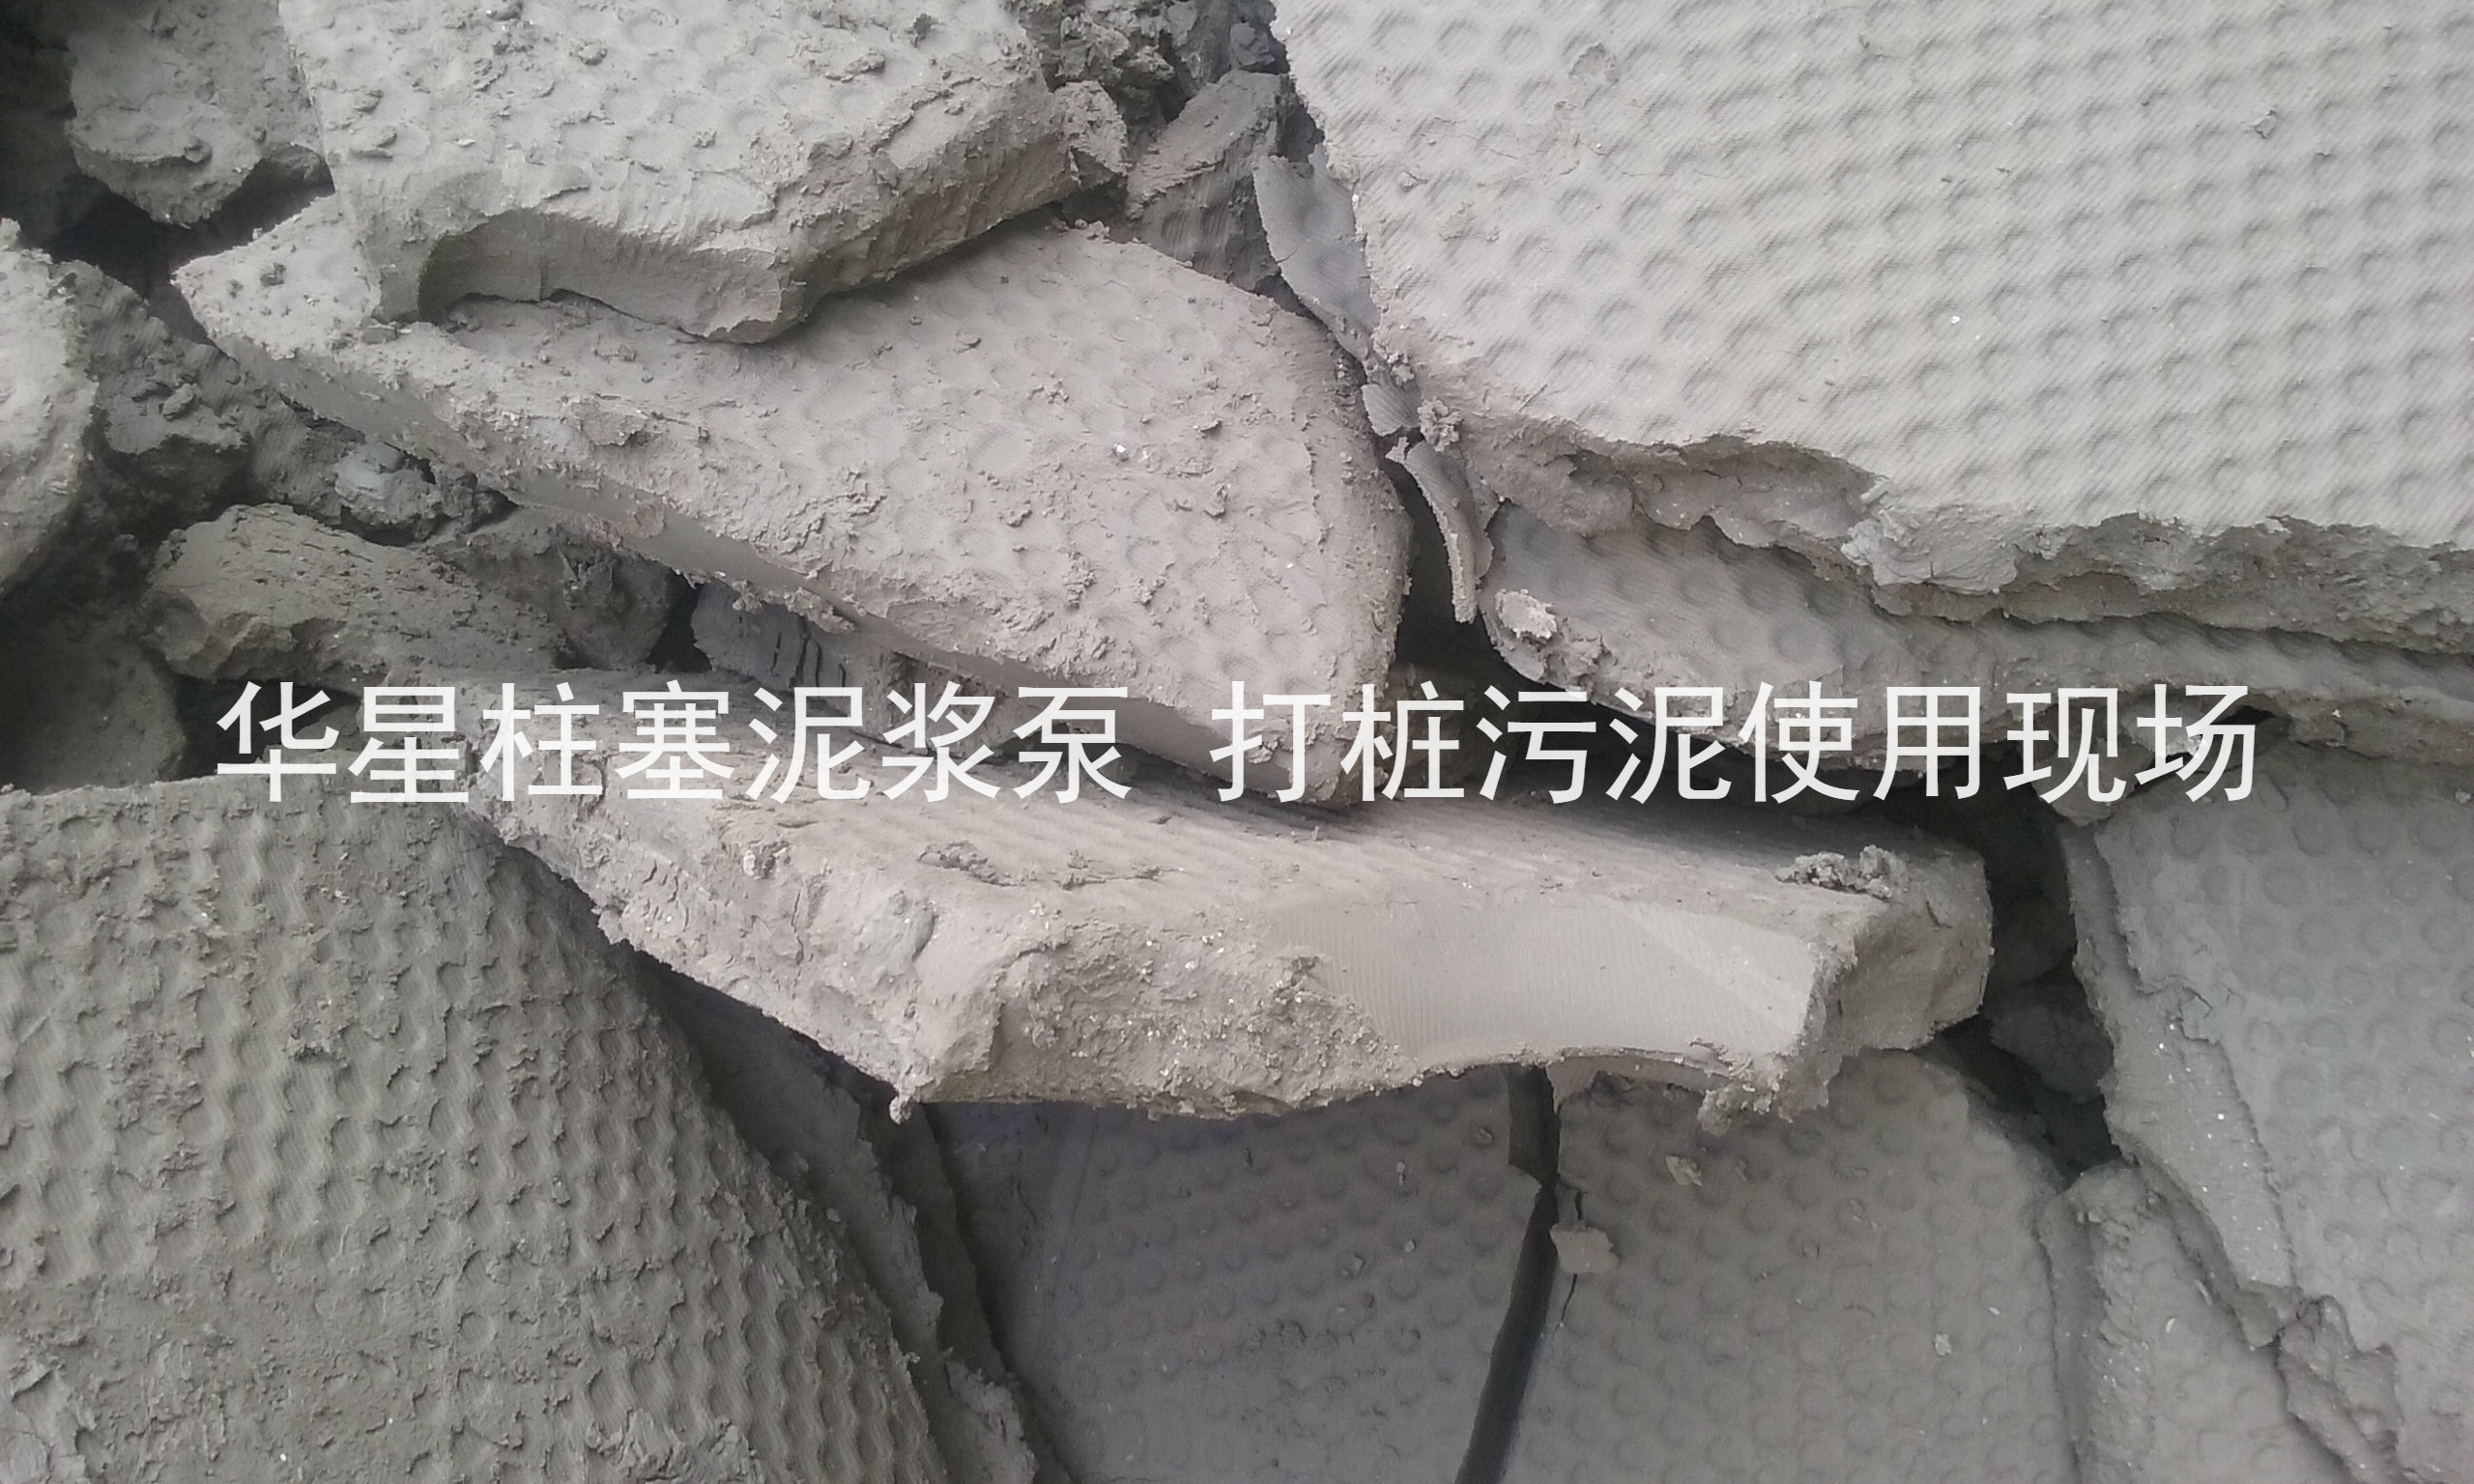 杭州打桩污泥使用华星柱塞泥浆泵现场